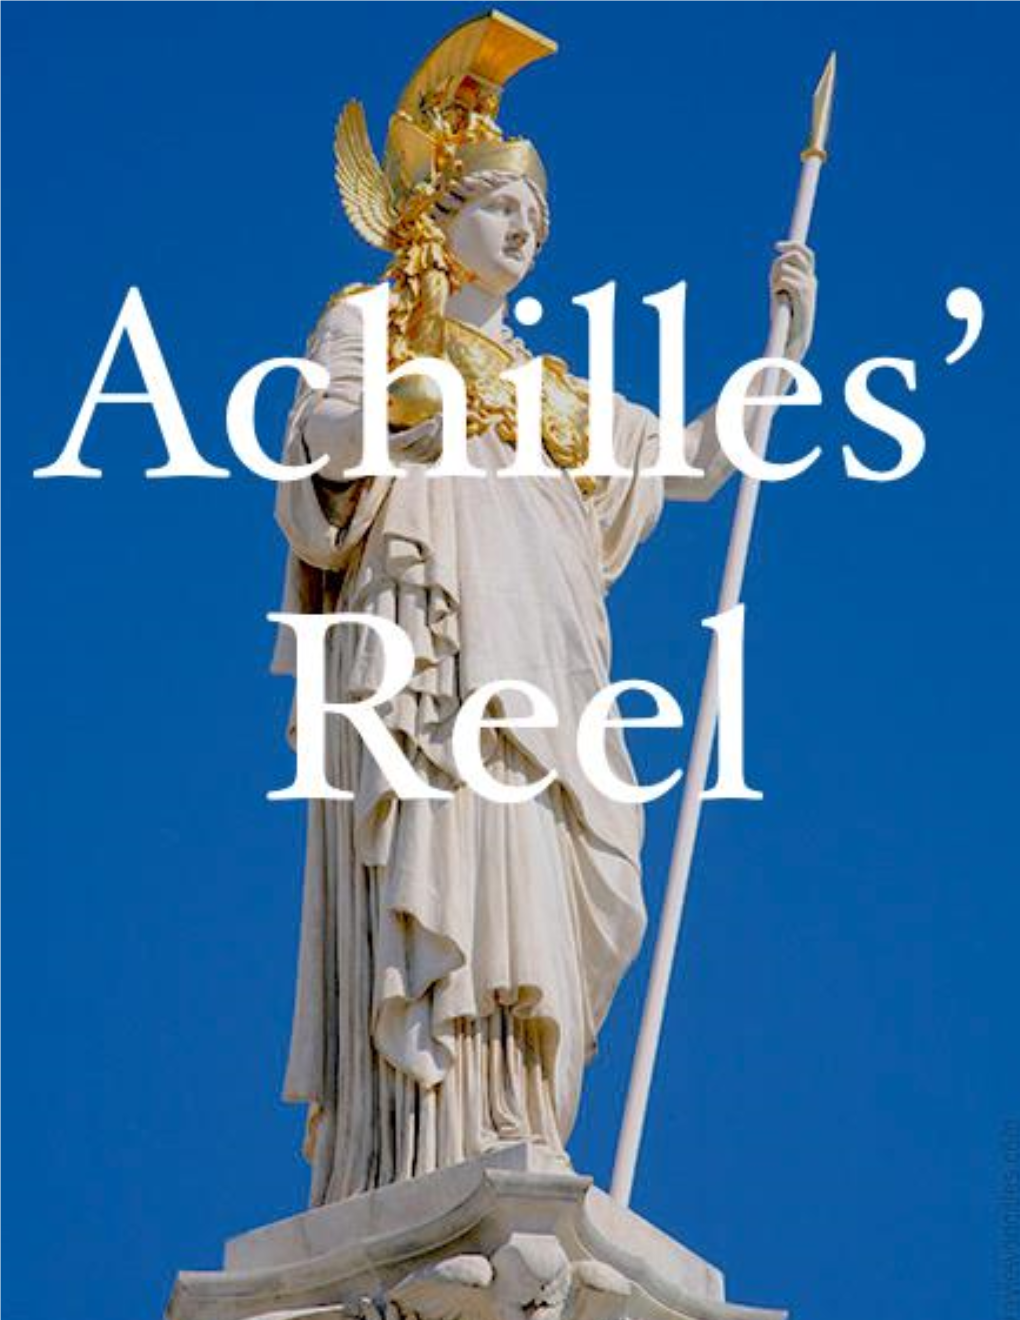 Achilles Reel Magazine